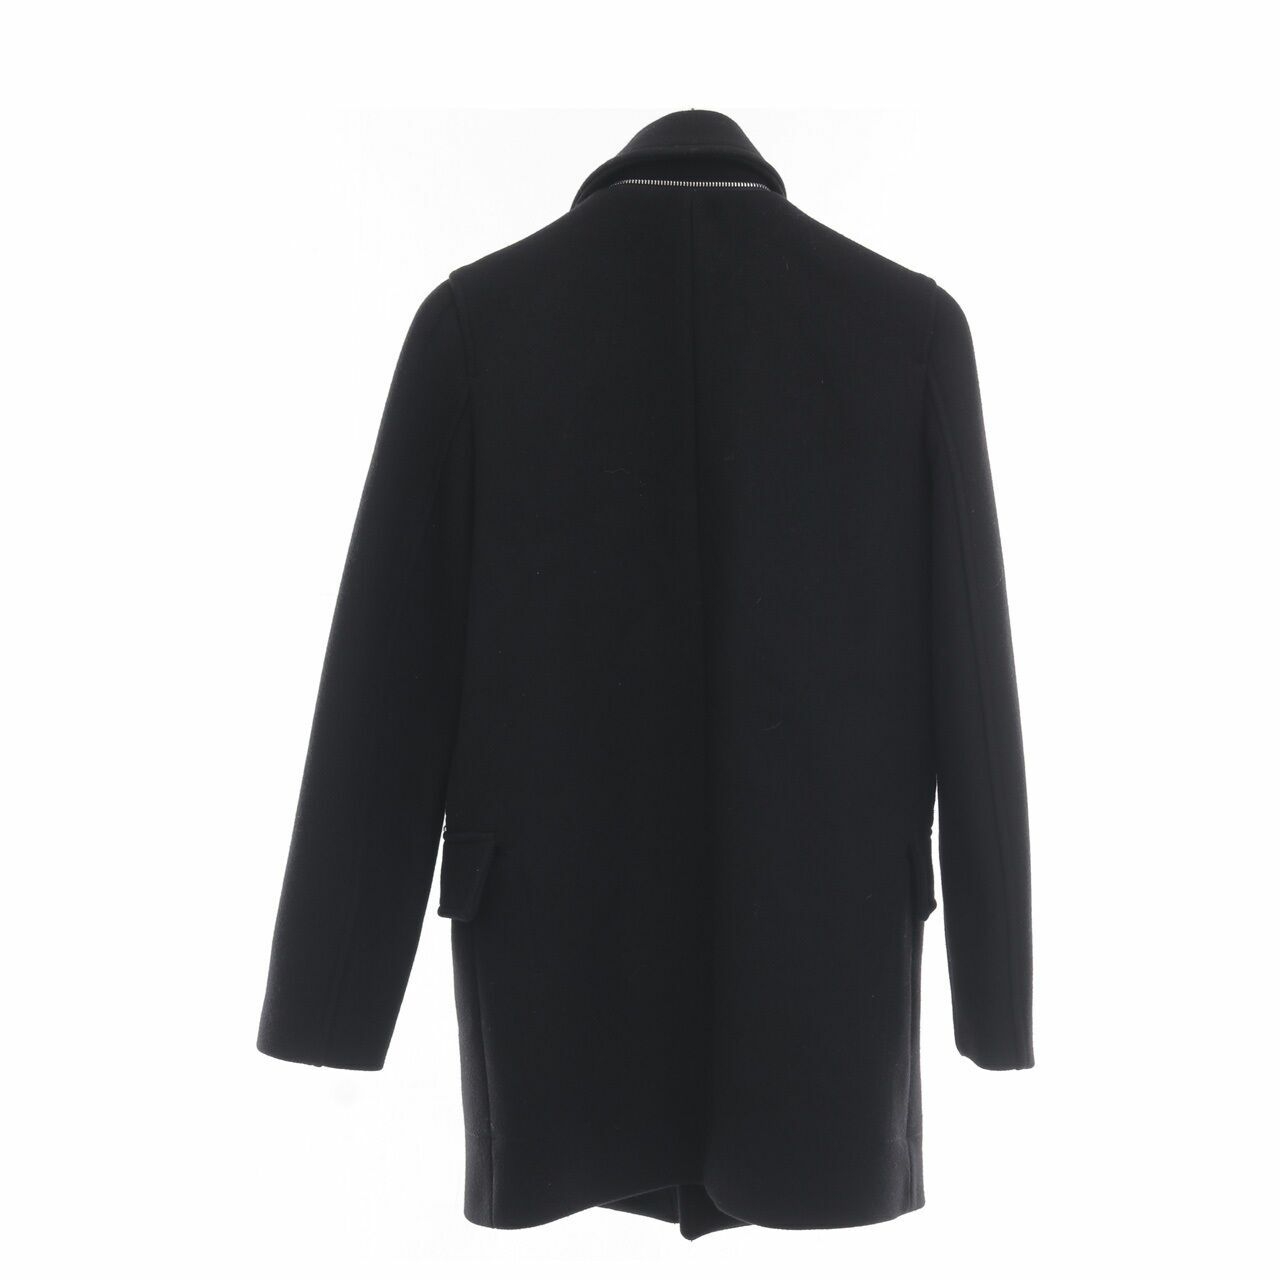 Zara Black Zipper Coat